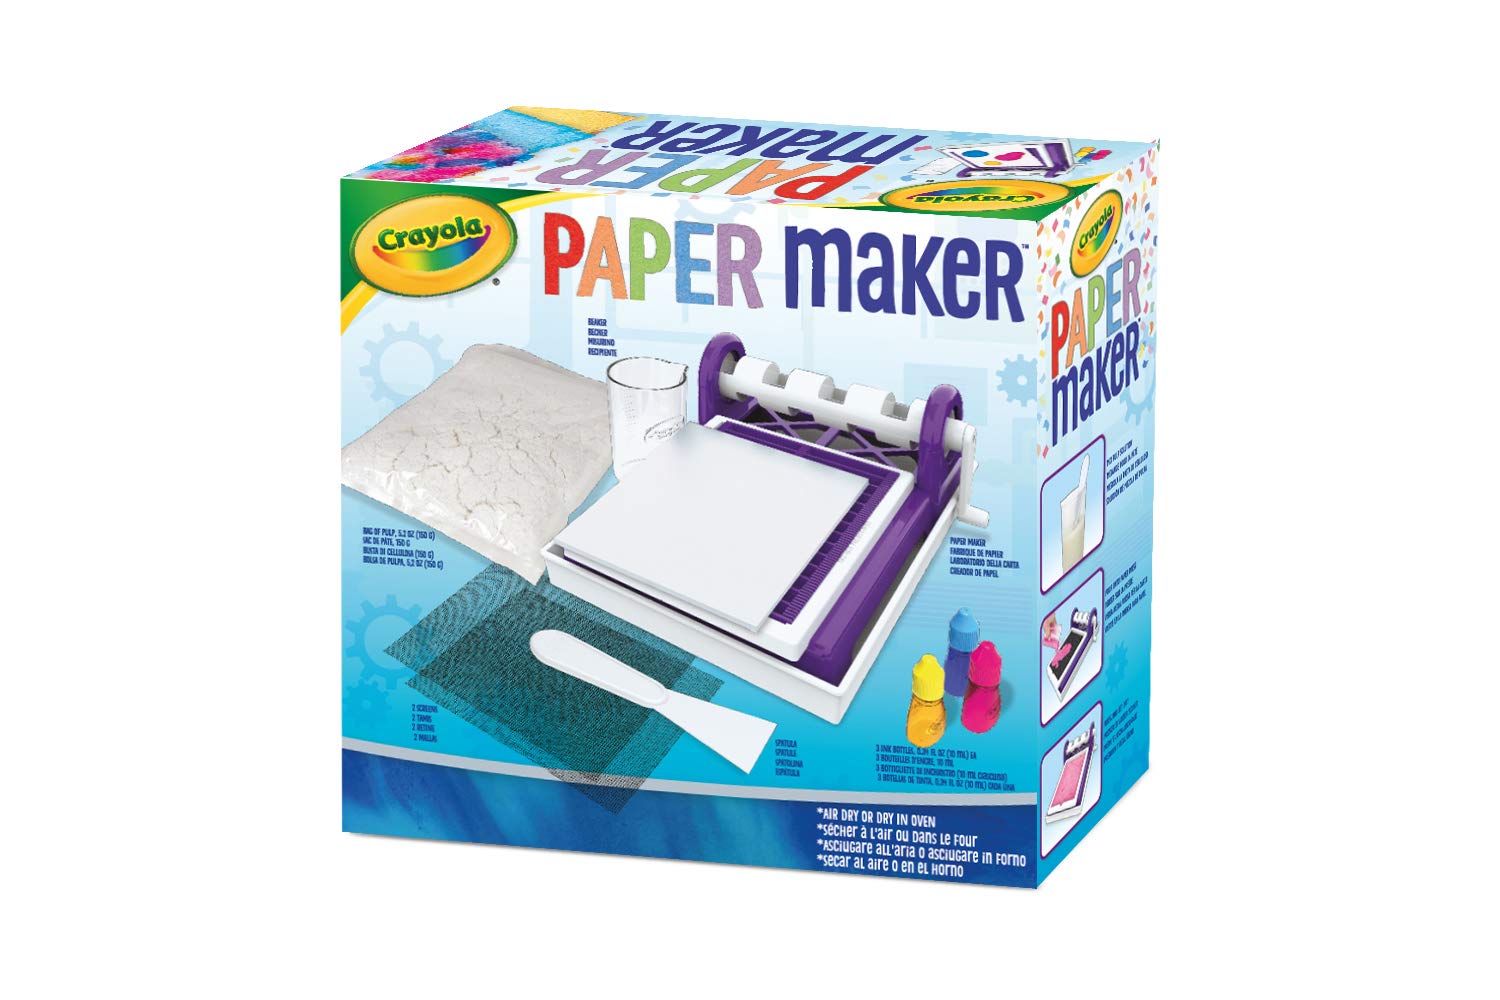 Crayola Paper Maker, Paper Making DIY Craft Kit